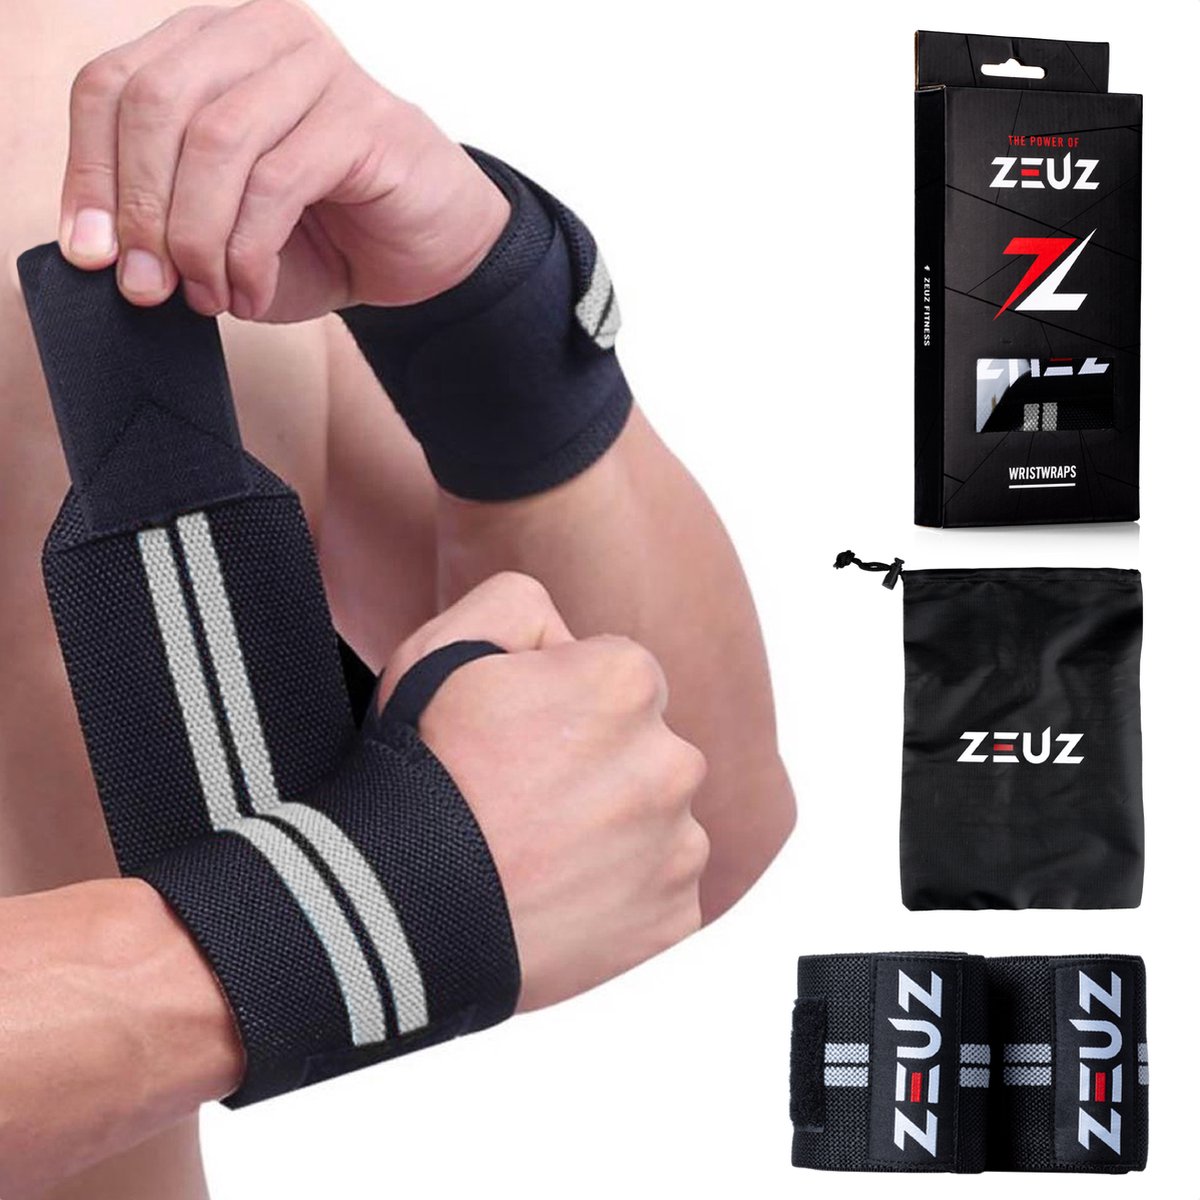 ZEUZ 2 Stuks Polsband voor Fitness & CrossFit - Wrist wraps – Krachttraining – Polsbrace – Grijs & Zwart - ZEUZ